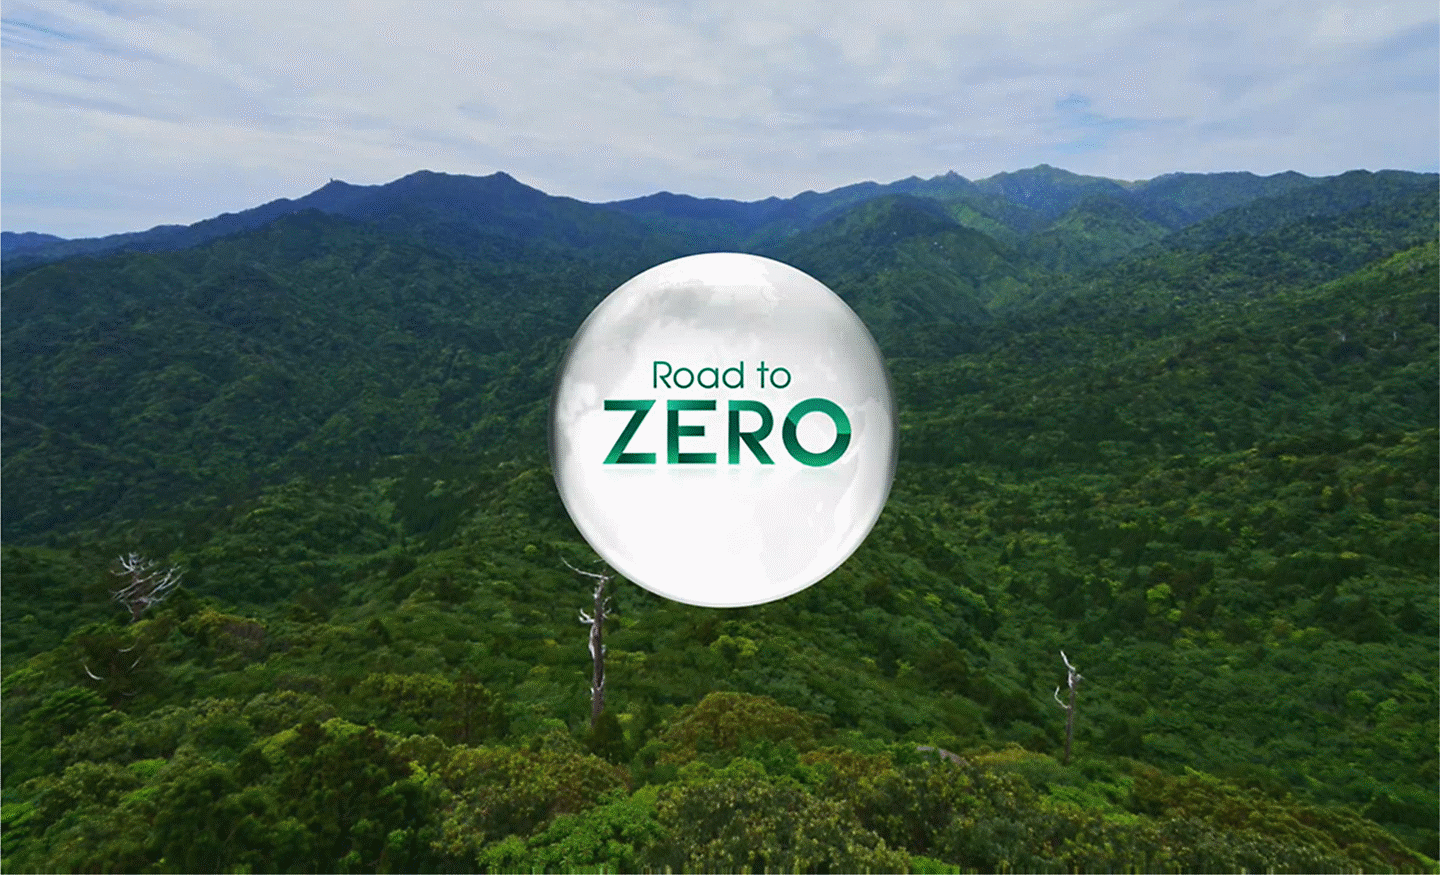 Logotip Road to Zero u šumi